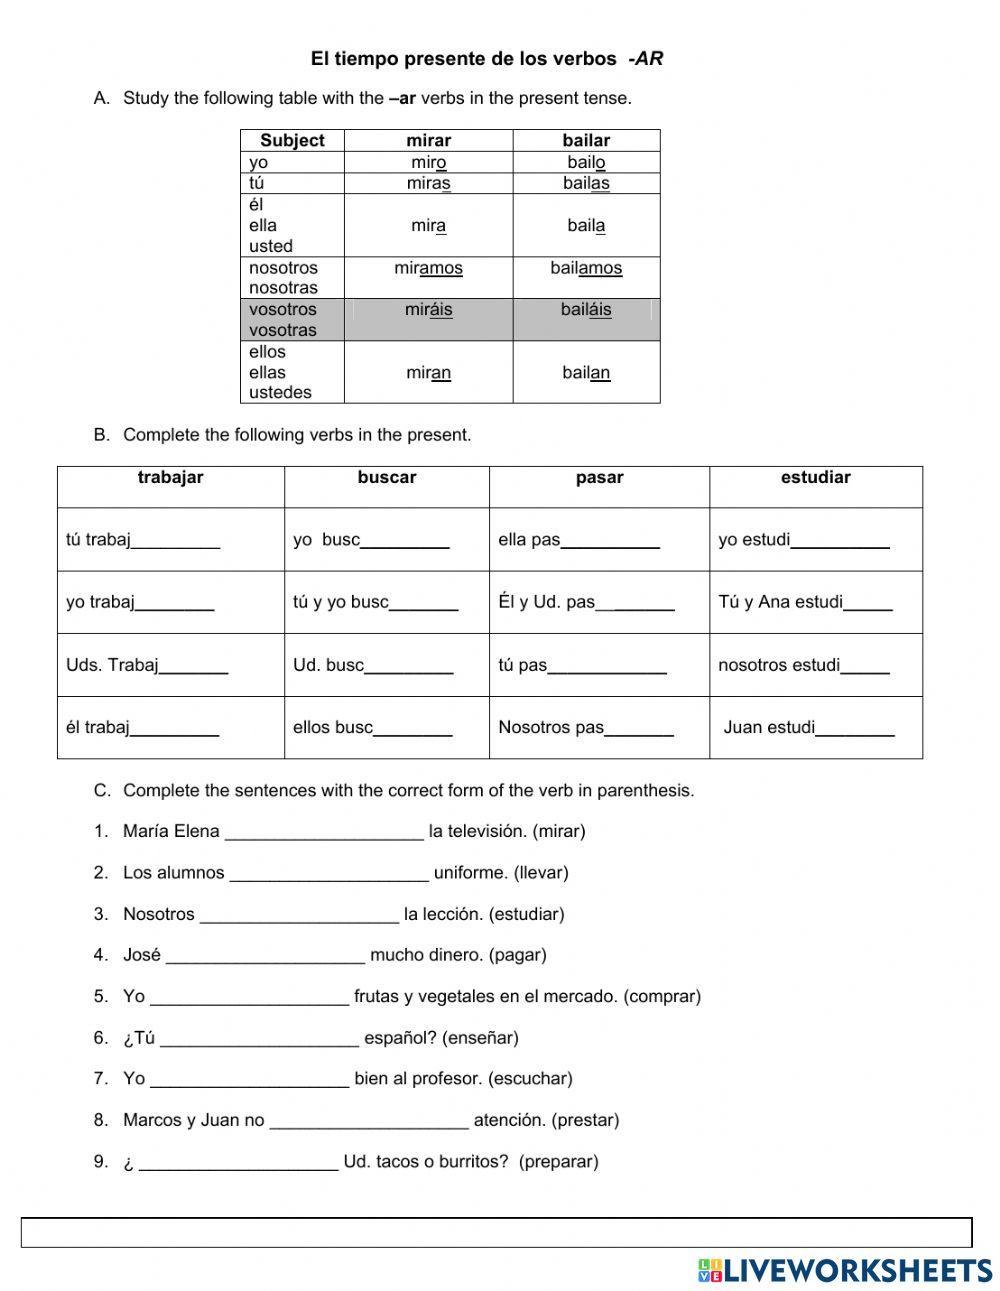 el-tiempo-presente-de-los-verbos-ar-worksheet-live-worksheets-verbos-regulares-lesson-plans